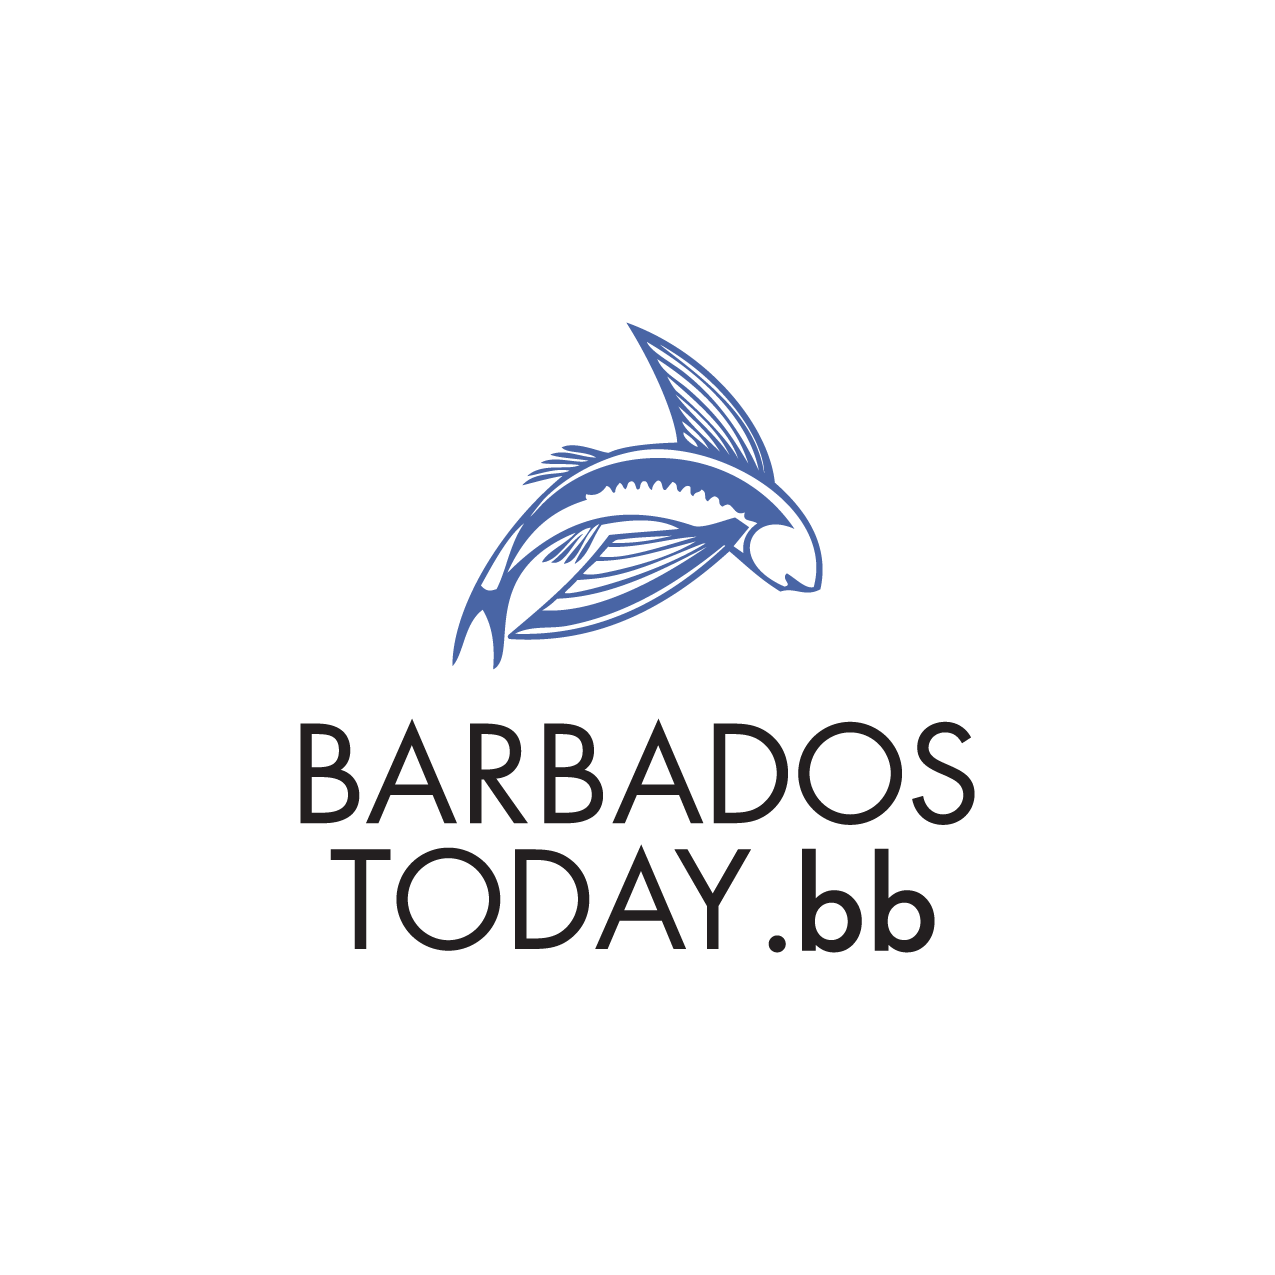 Barbados Today